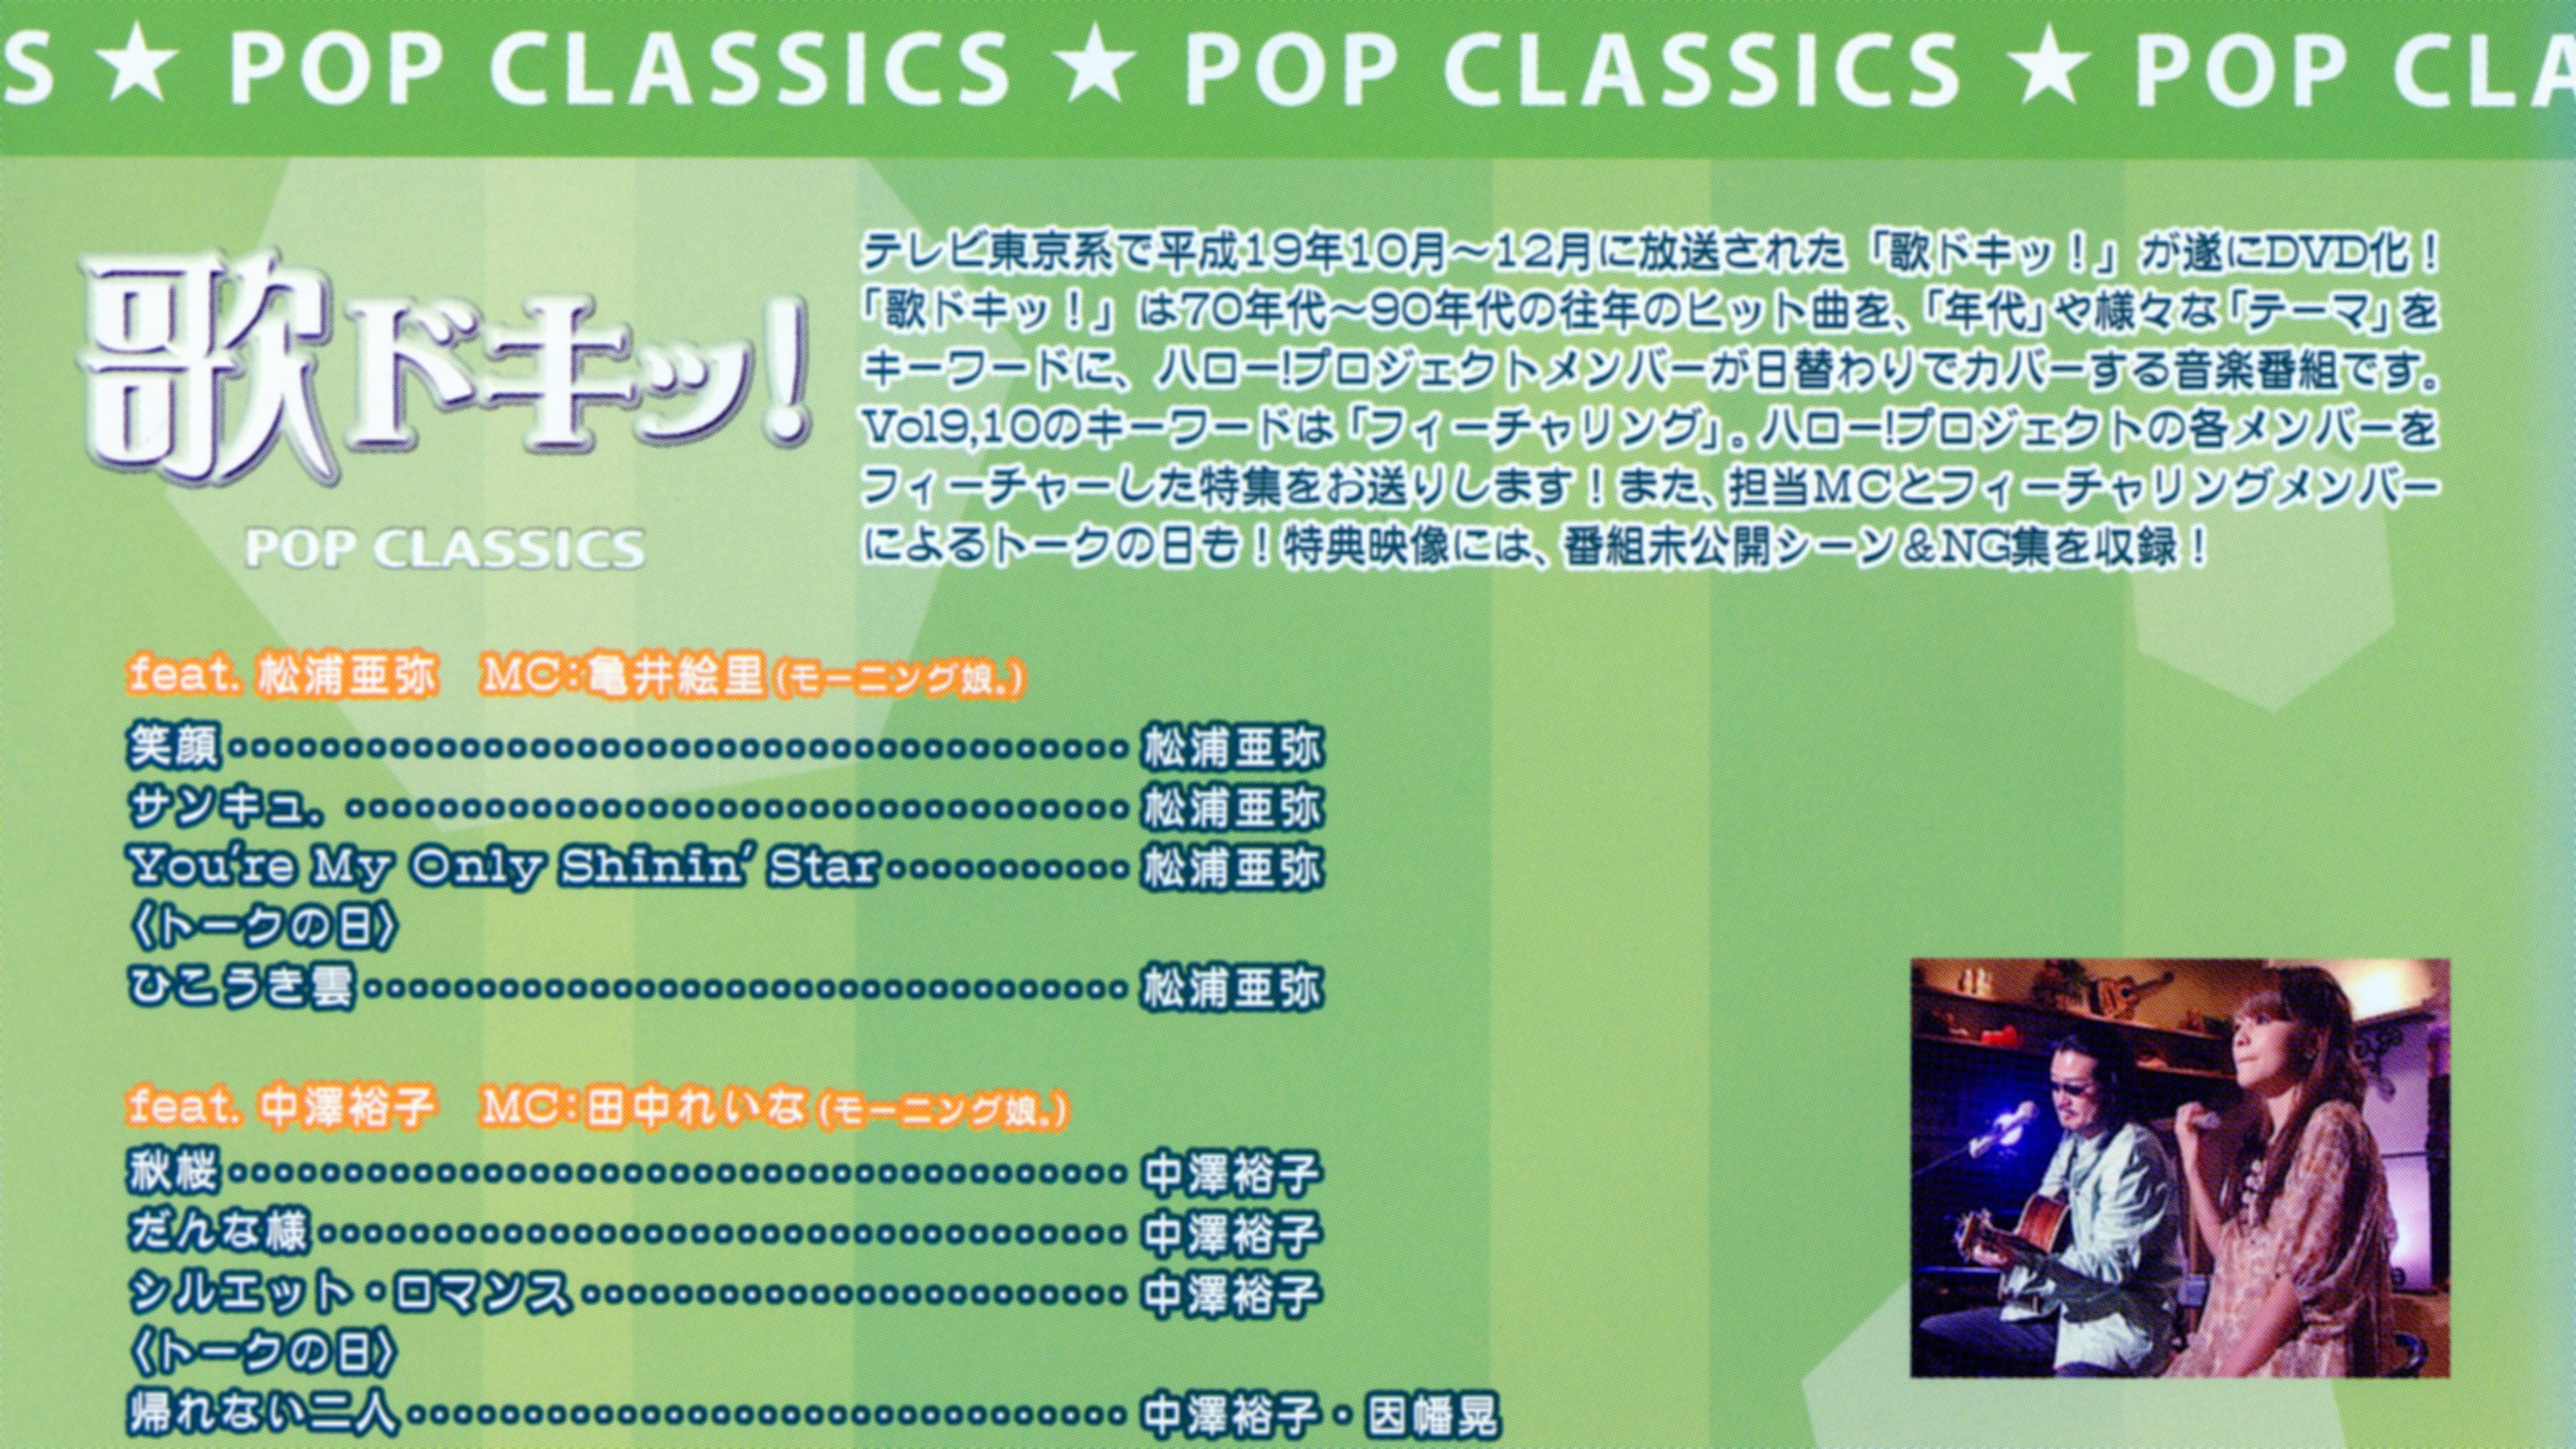 Uta Doki! Pop Classics Vol.9 backdrop